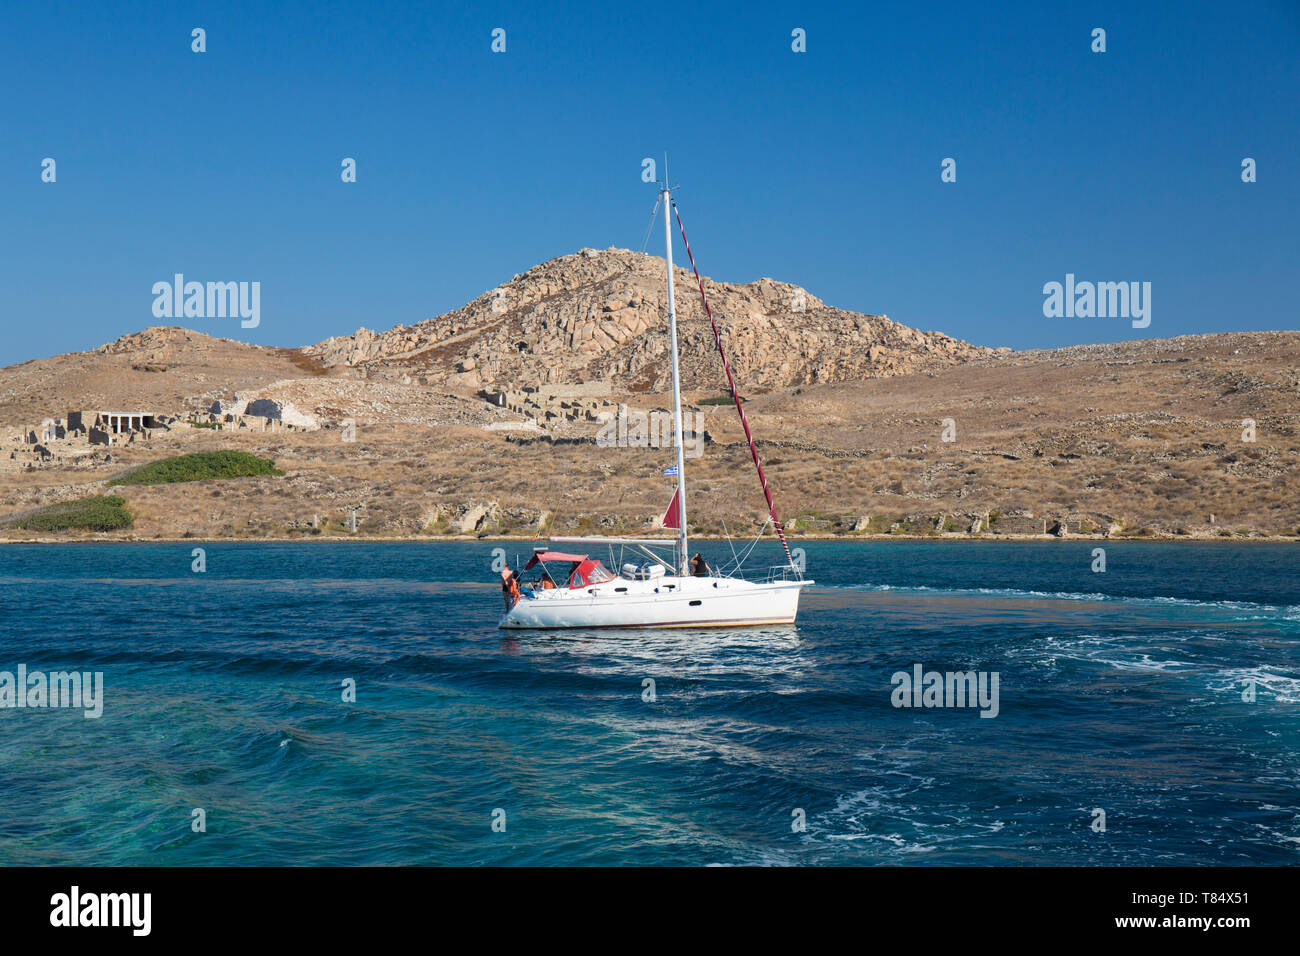 Delos, Mykonos, Egeo Meridionale, Grecia. Yacht a vela attraverso il canale di Delos, il Delos sito archeologico visibile sullo sfondo sotto il monte Kynthos. Foto Stock